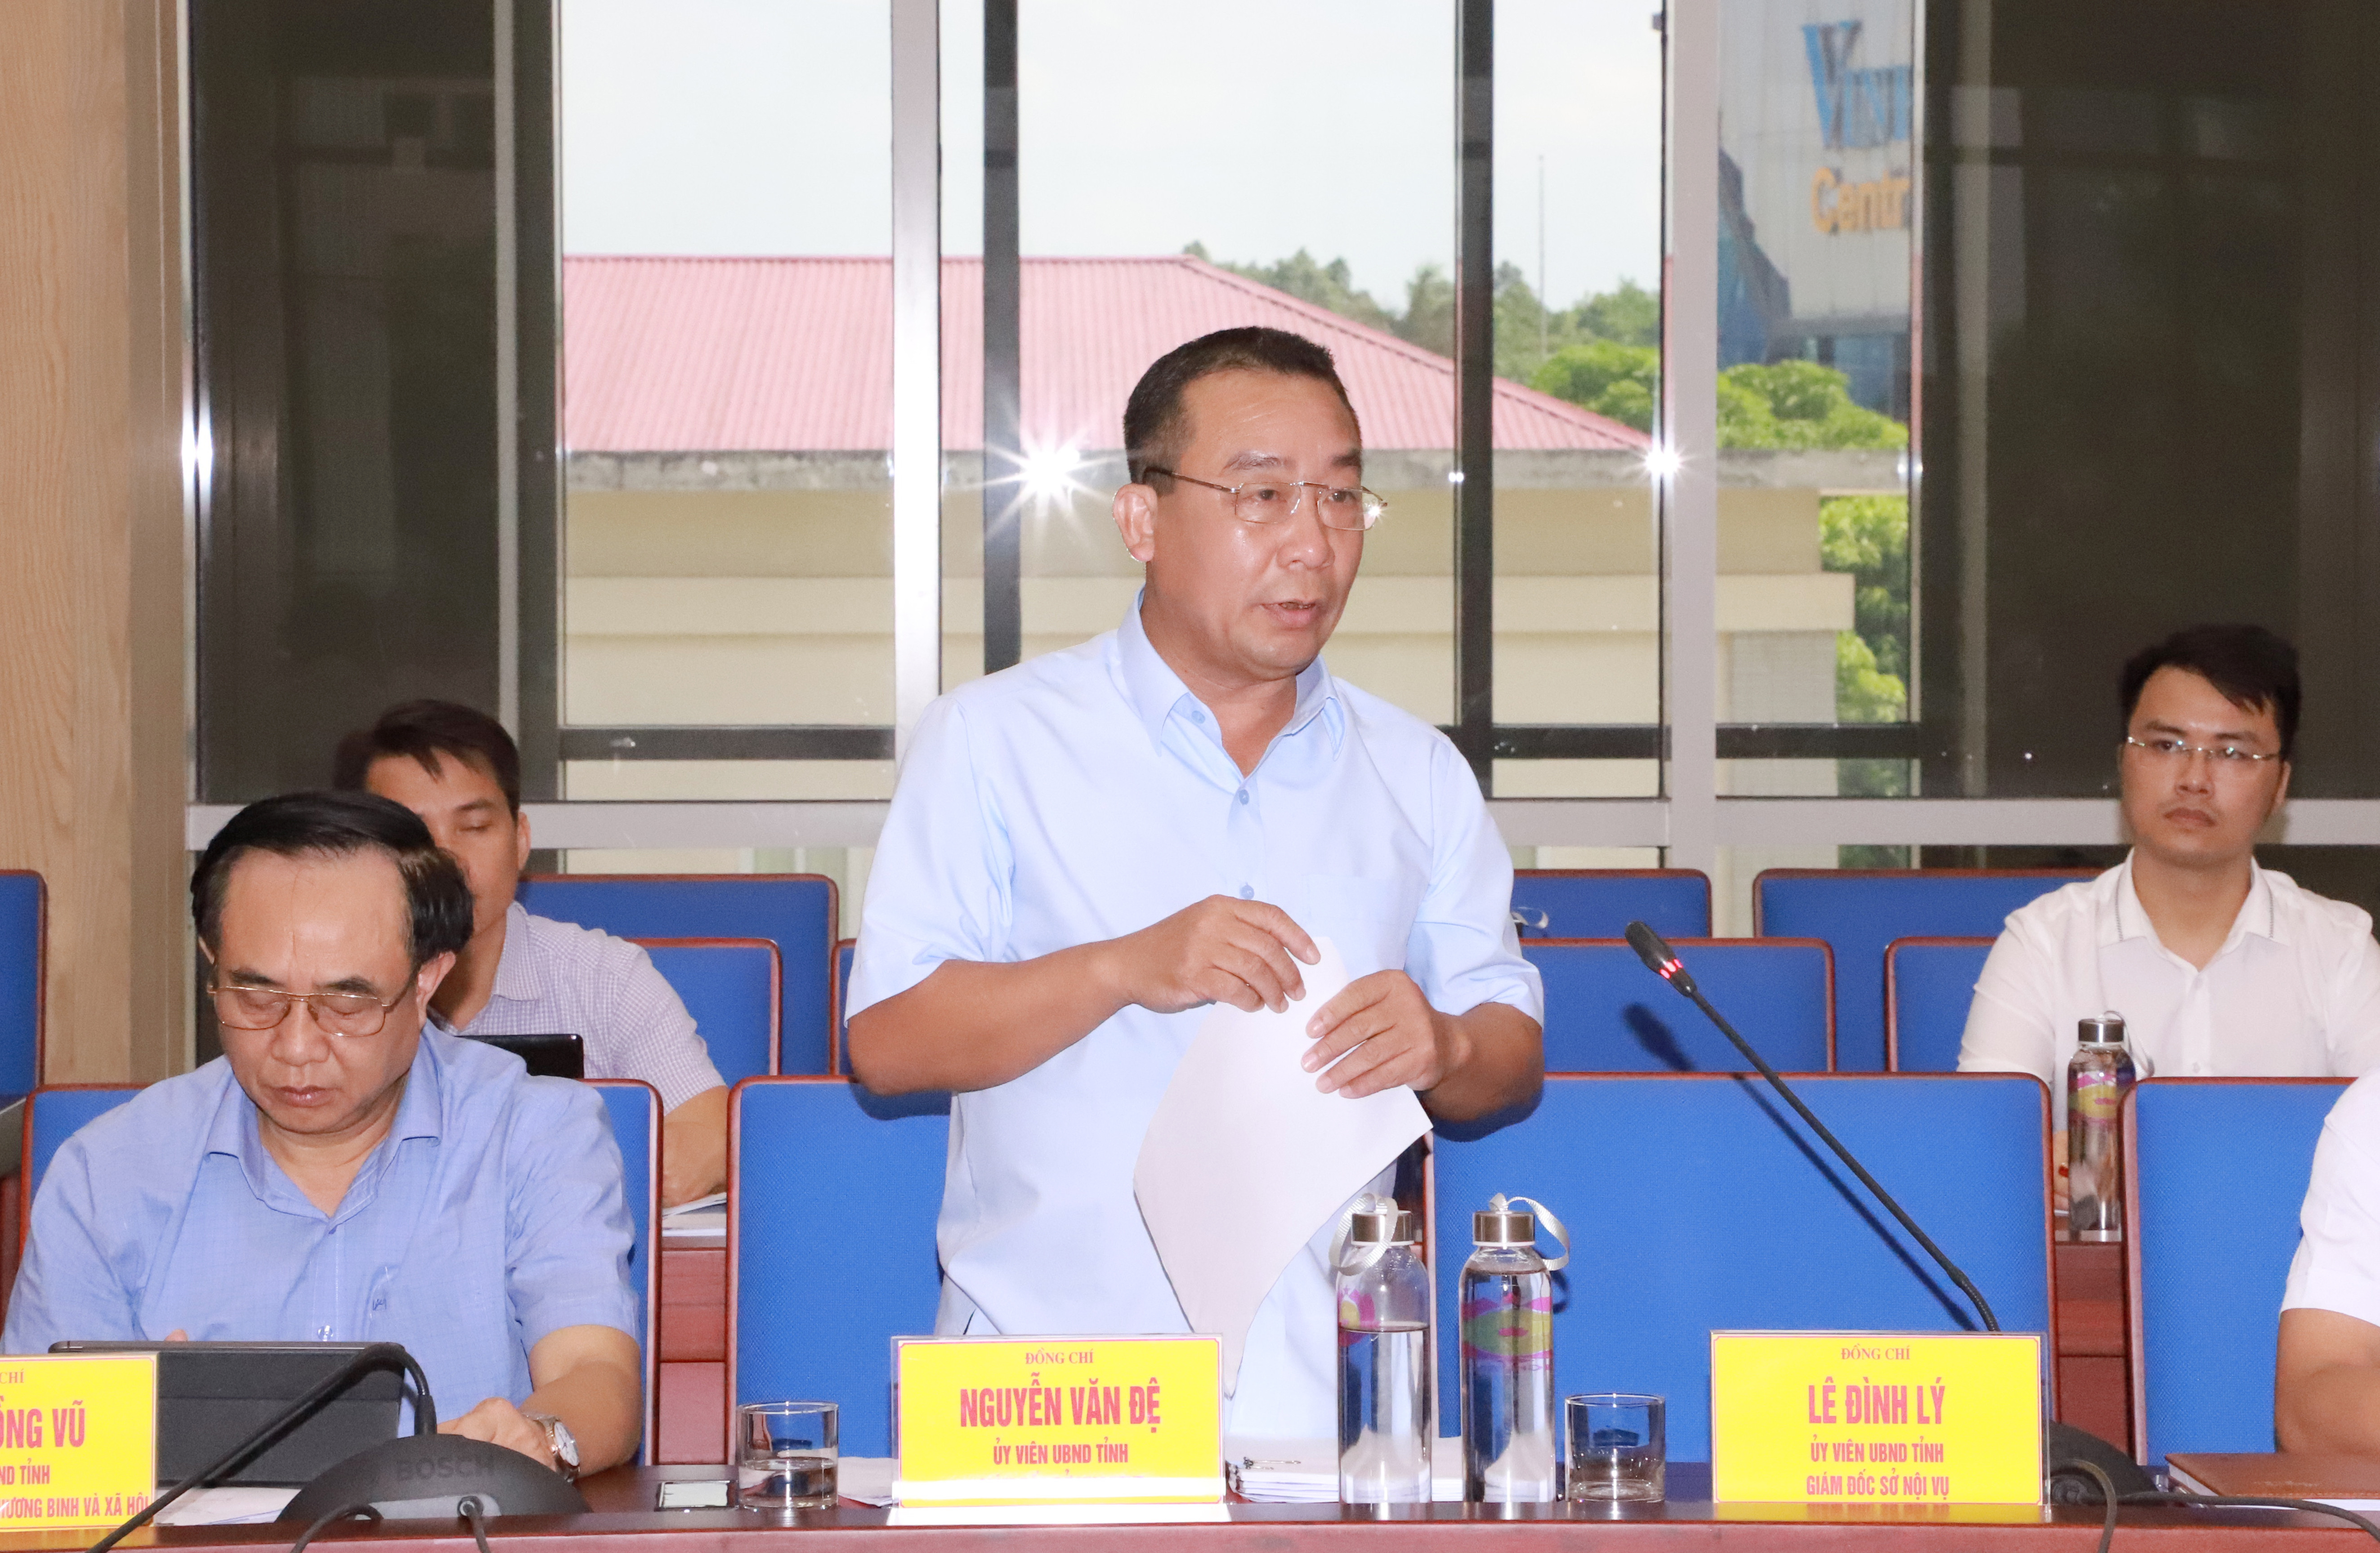 Ông Nguyễn Văn Đệ - Giám đốc Sở NN&PTNT  trình bày dự thảo Nghị quyết HĐND tỉnh về . Ảnh: Phạm Bằng